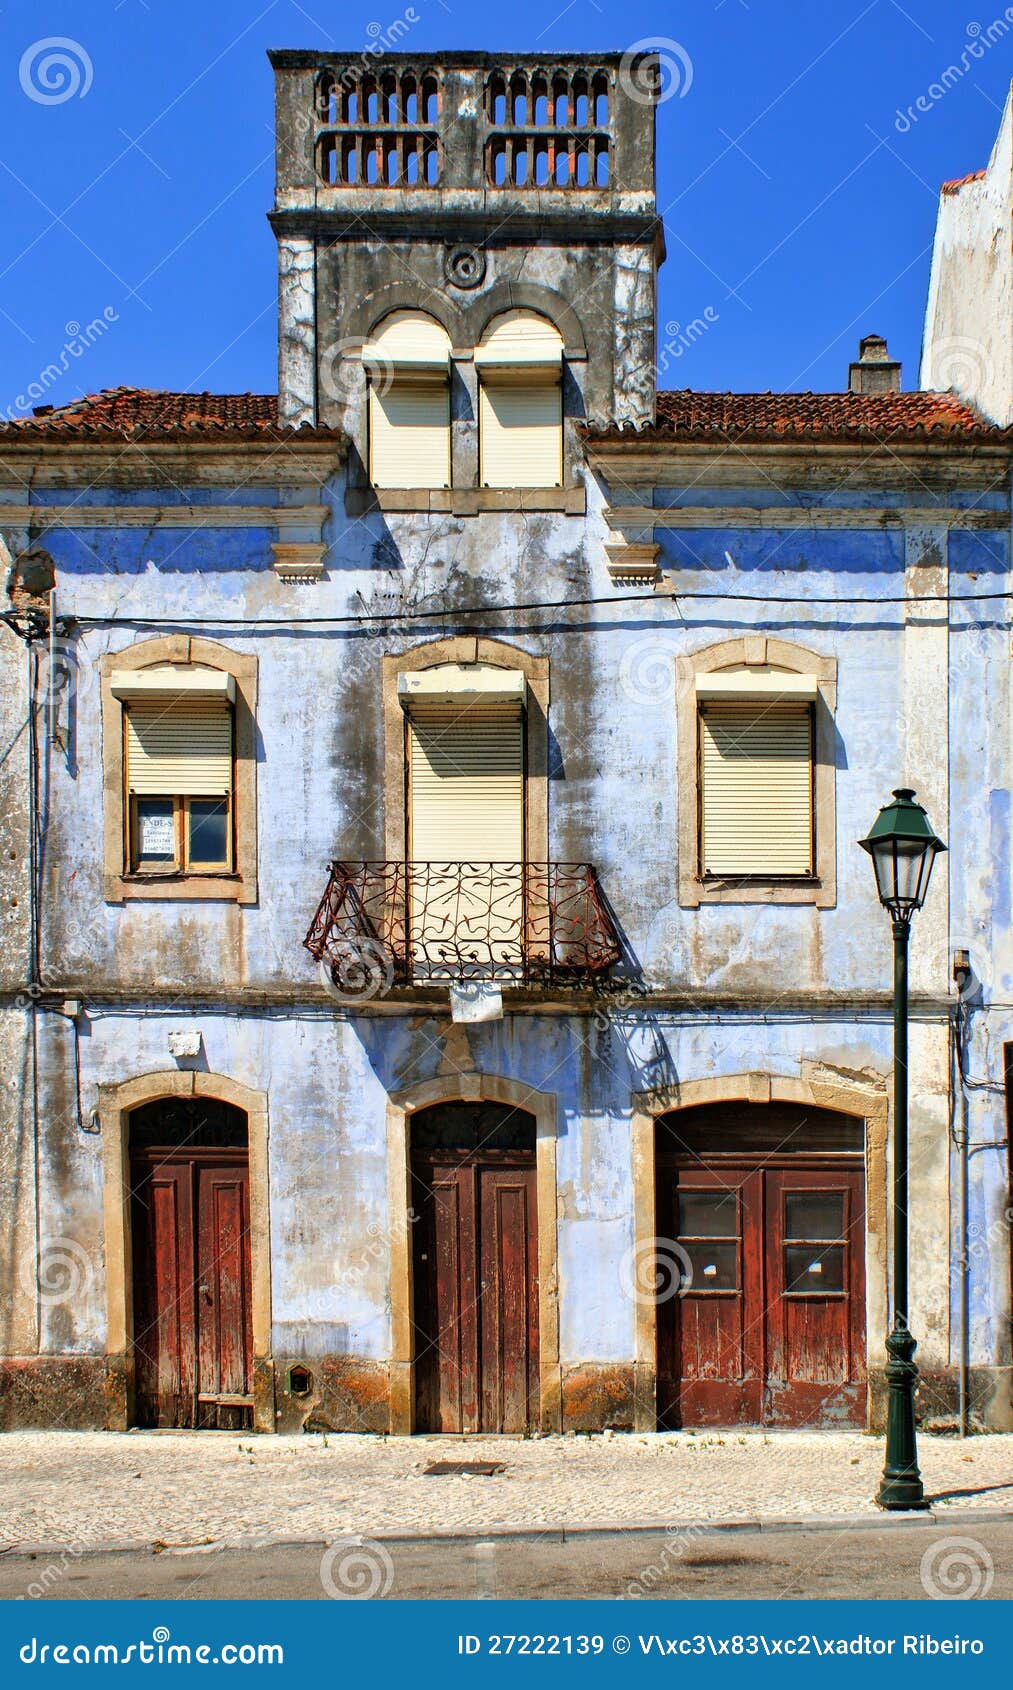 old house in miranda do corvo